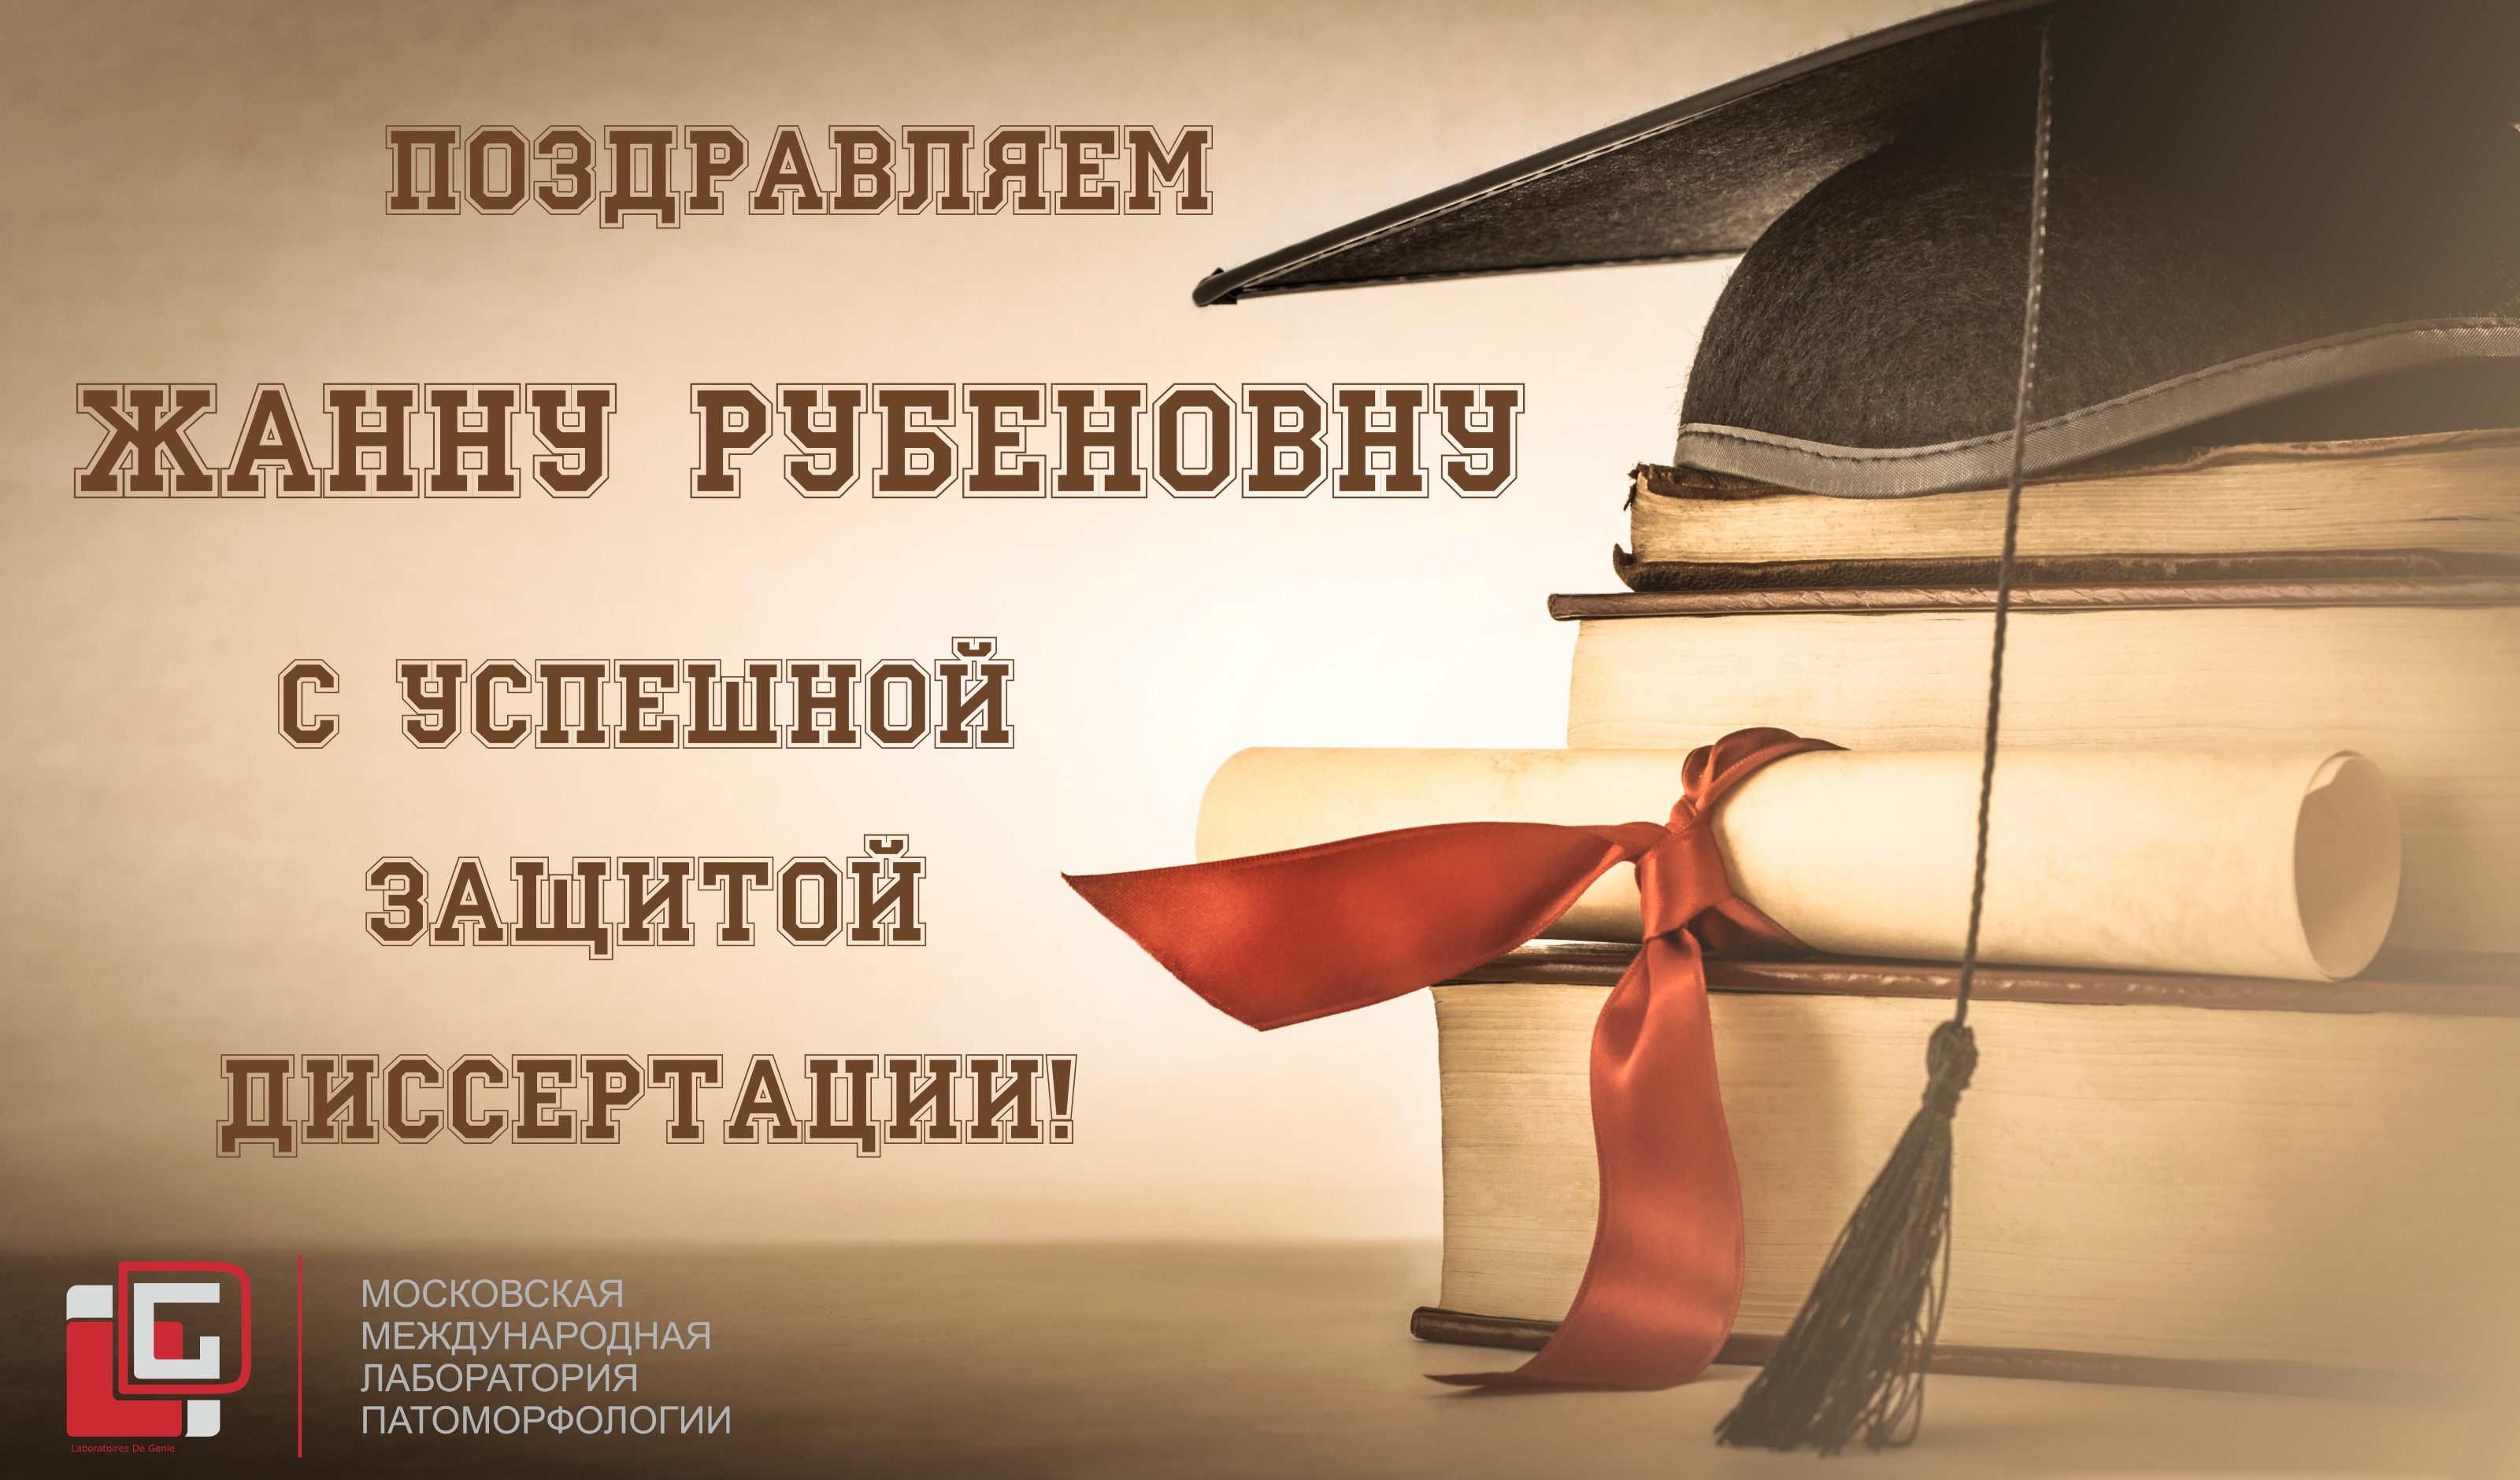 Поздравляем Ж.Р.Омарову с защитой диссертации!